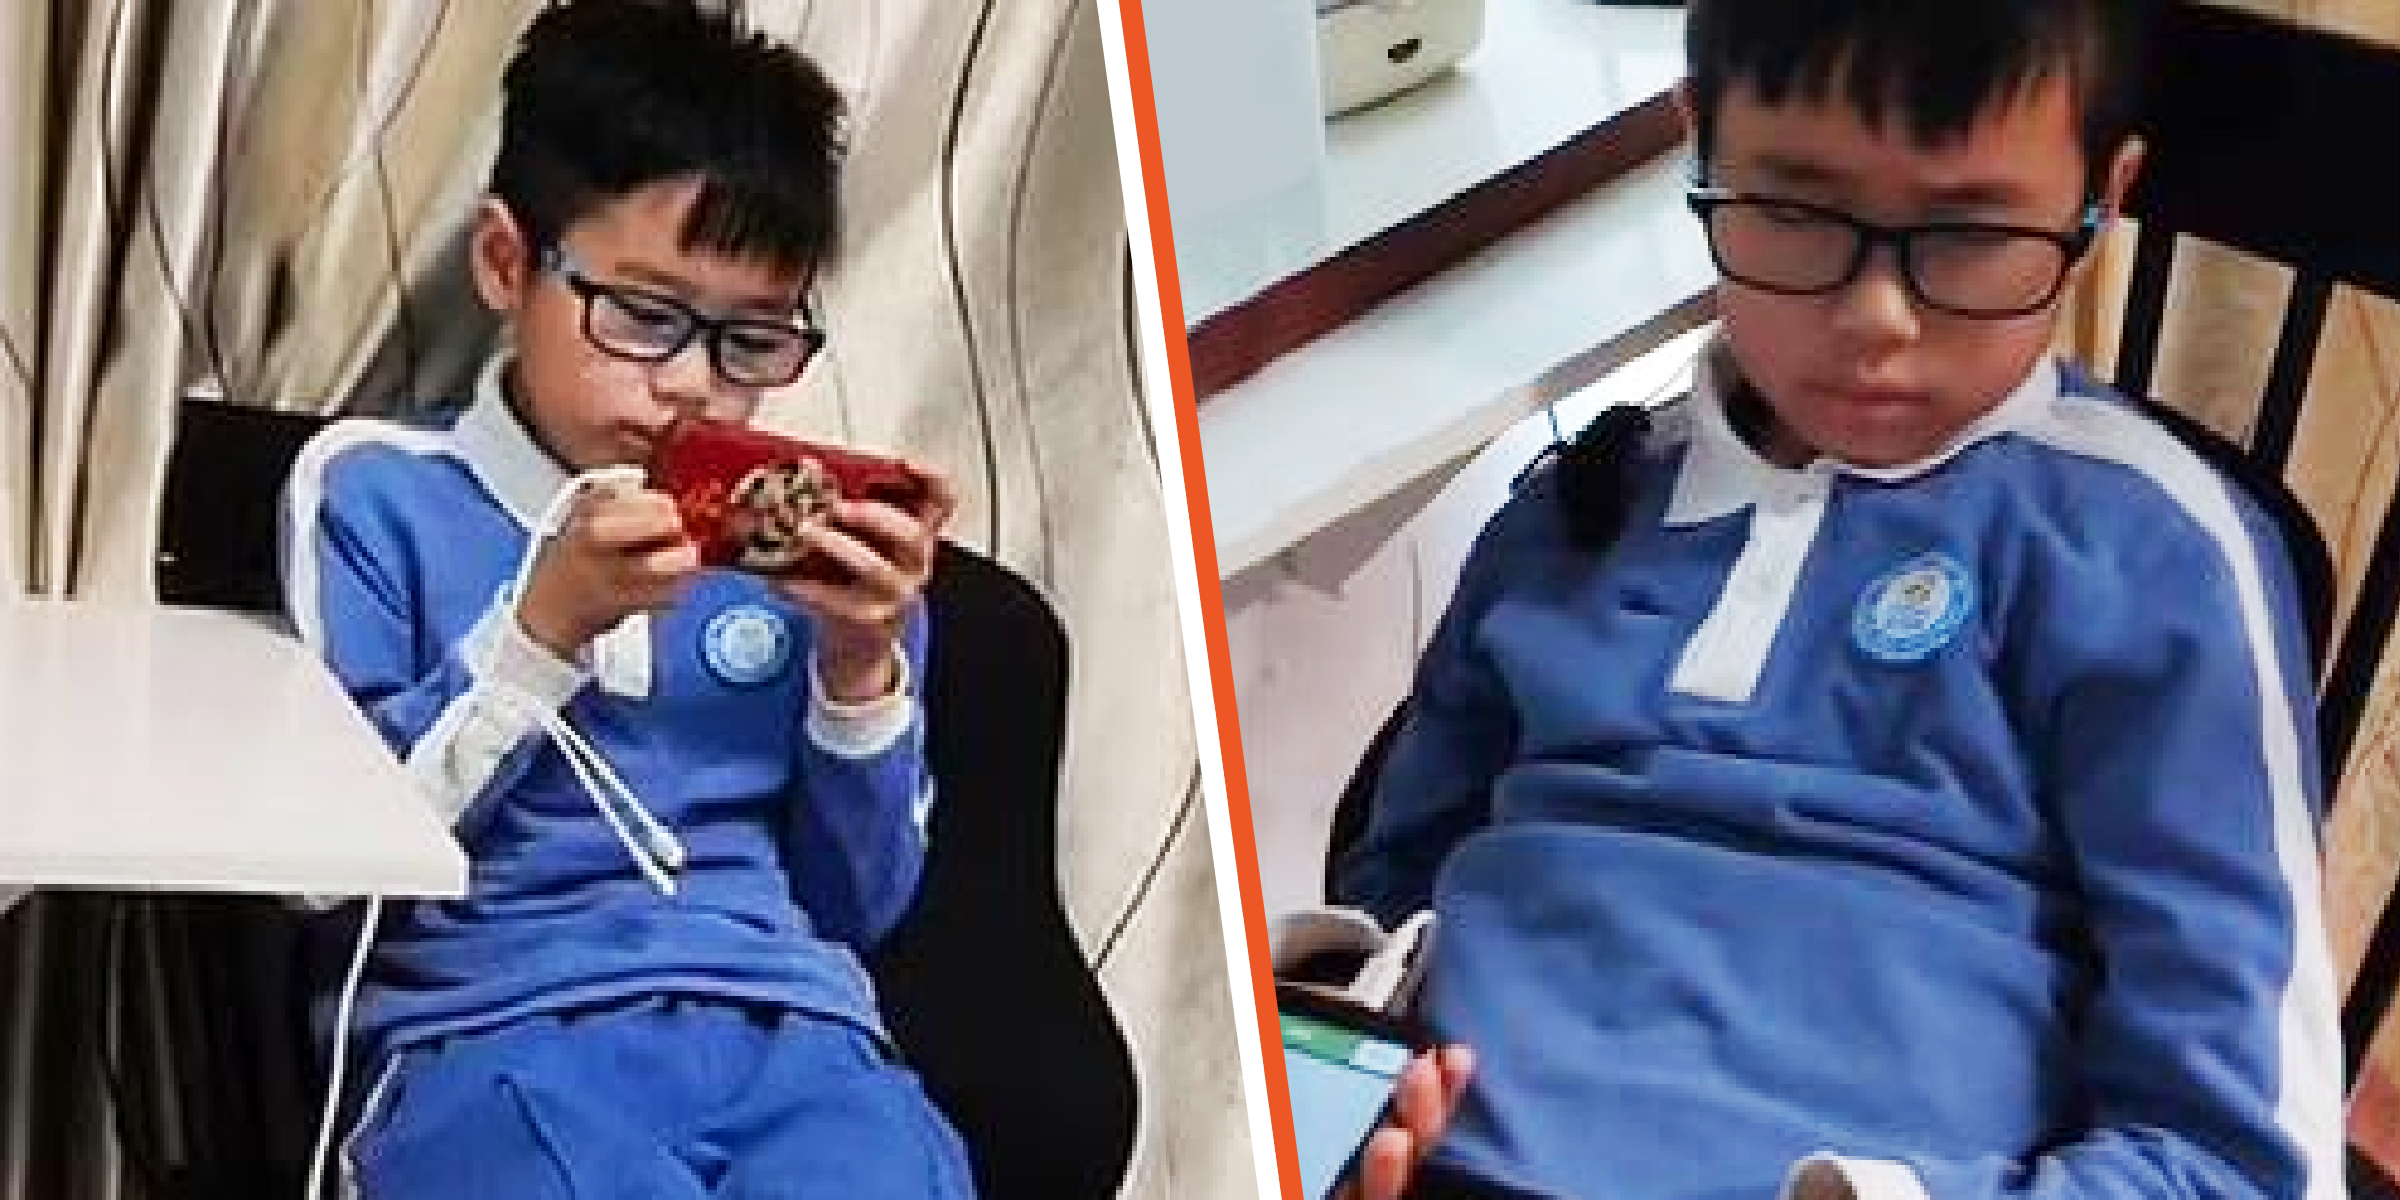 Le garçon chinois de 11 ans | Source : facebook.com/DailyMail